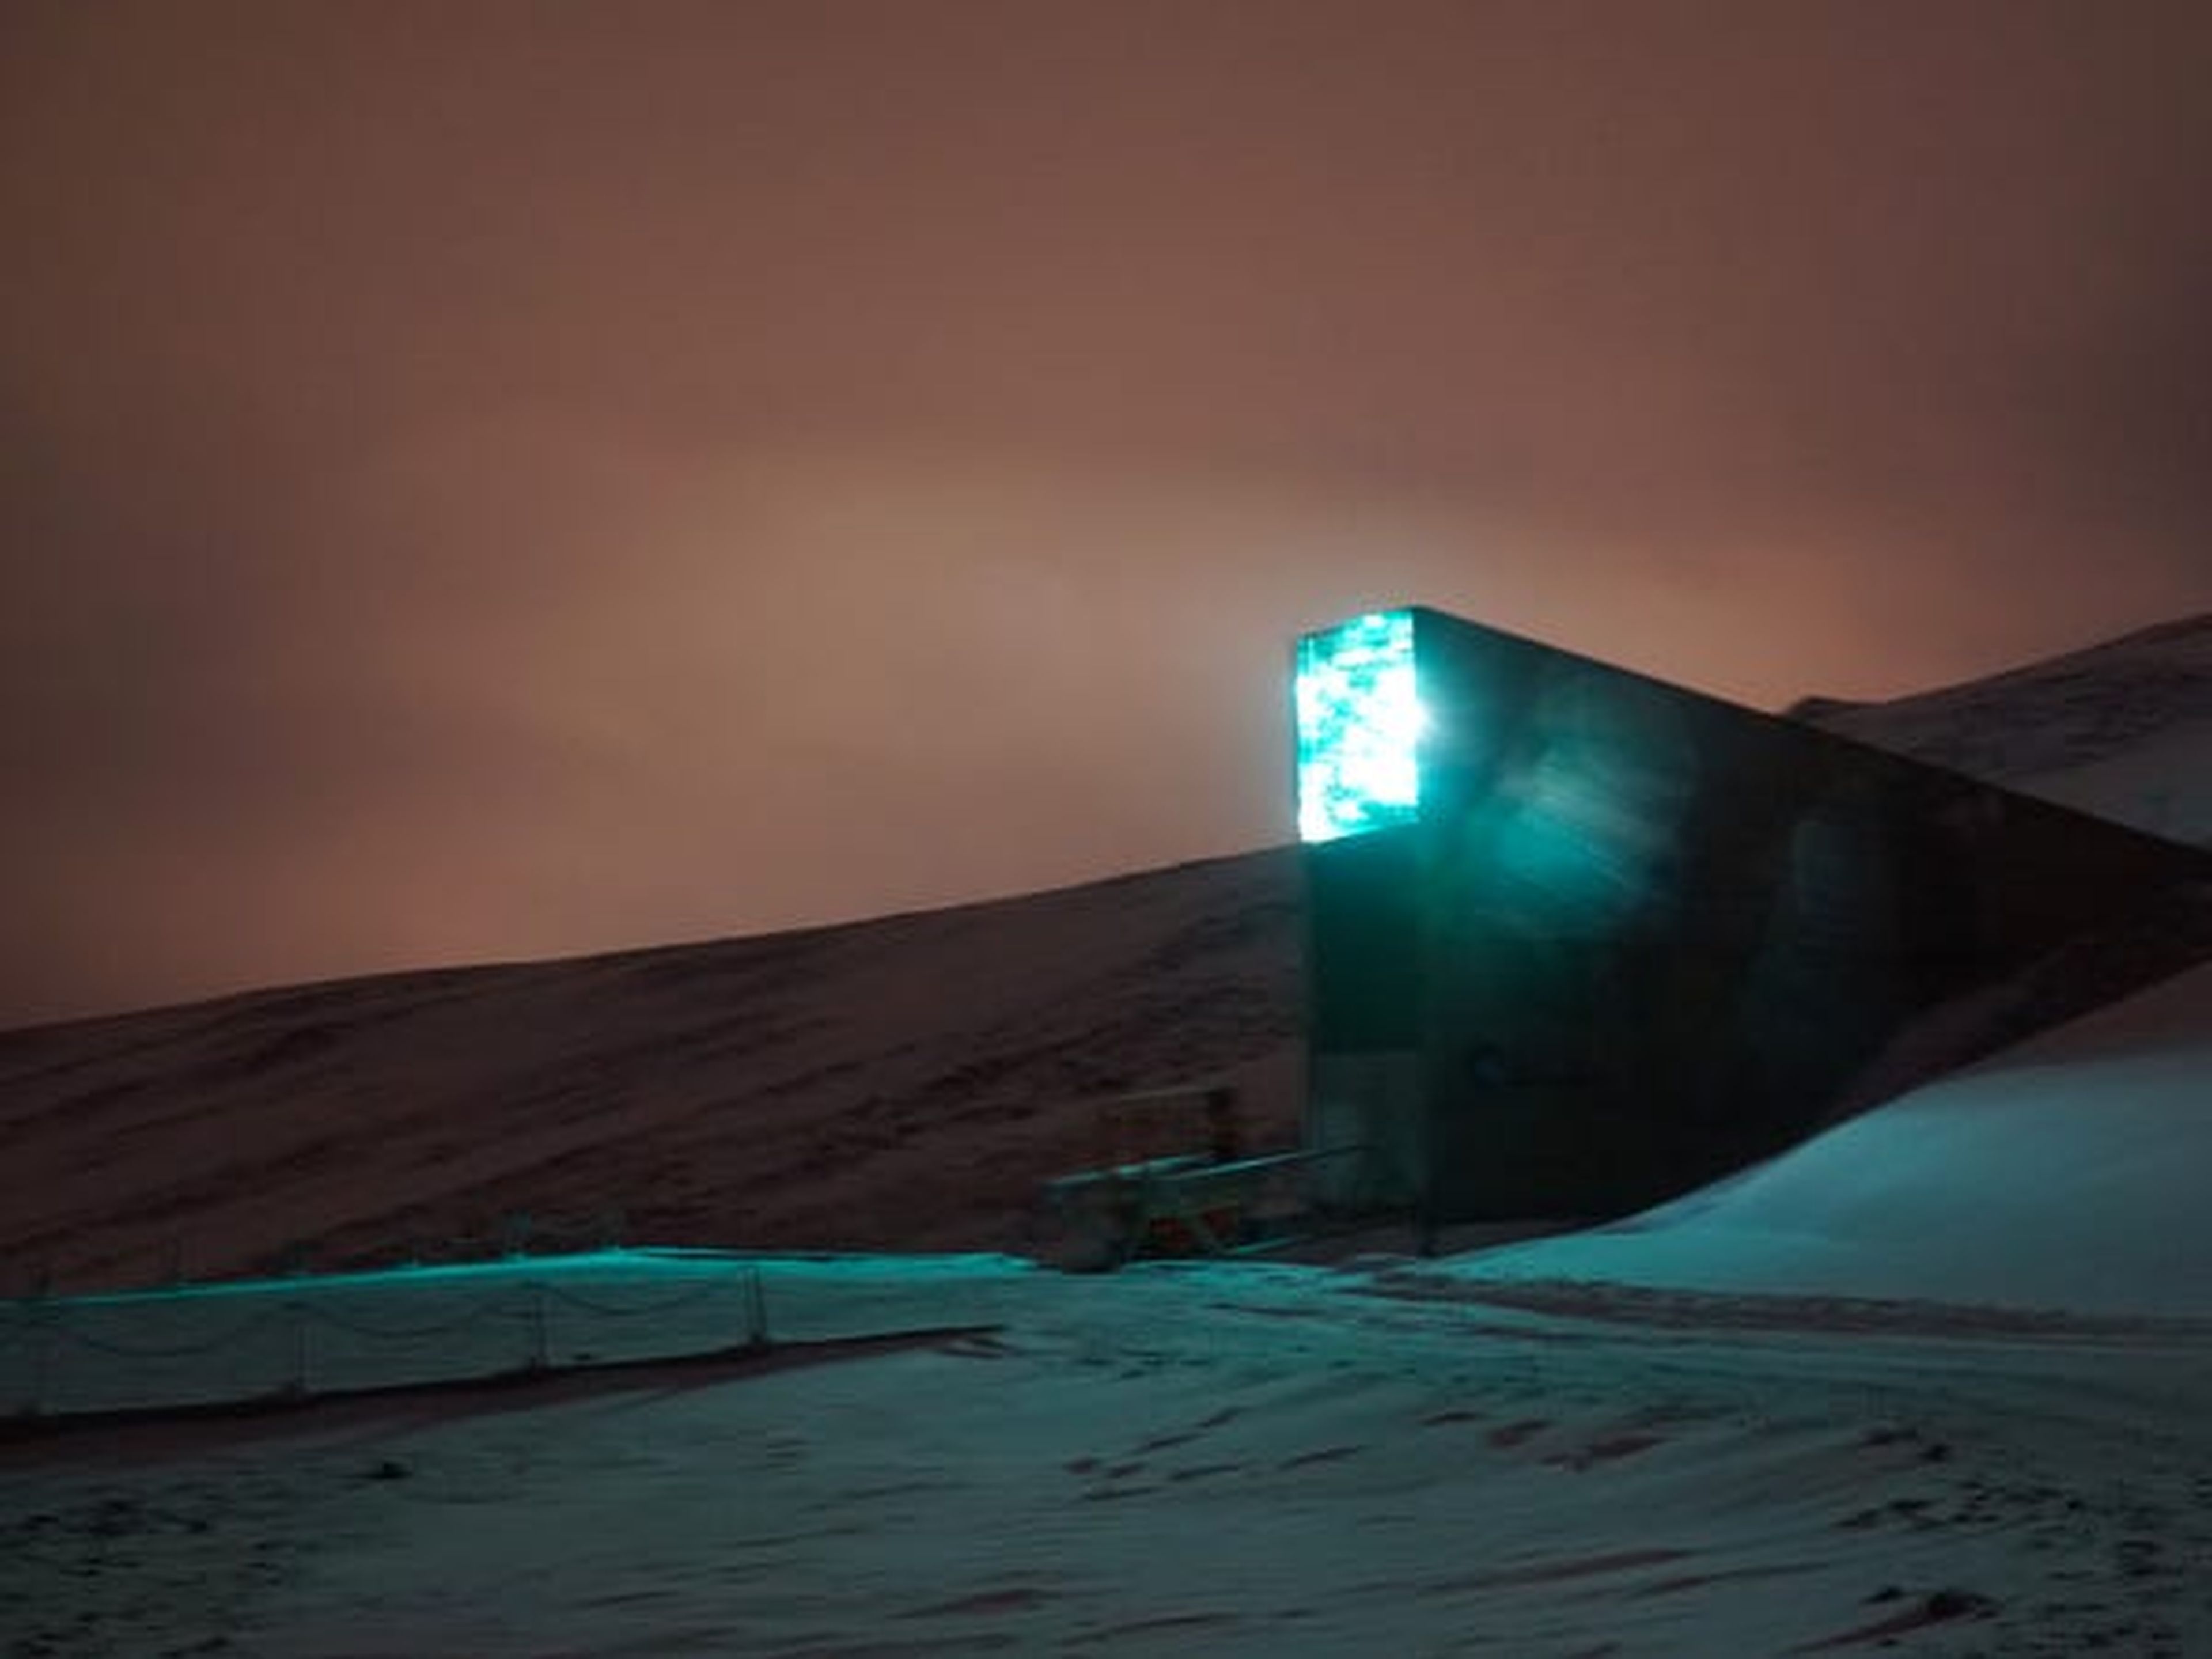 La Bóveda Global de Semillas de Svalbard se adentra 900 metros dentro de una montaña cerca de Longyearbyen y alberga más de un millón de semillas diferentes. También parece que sería una guarida espectacular para un villano de Bond.